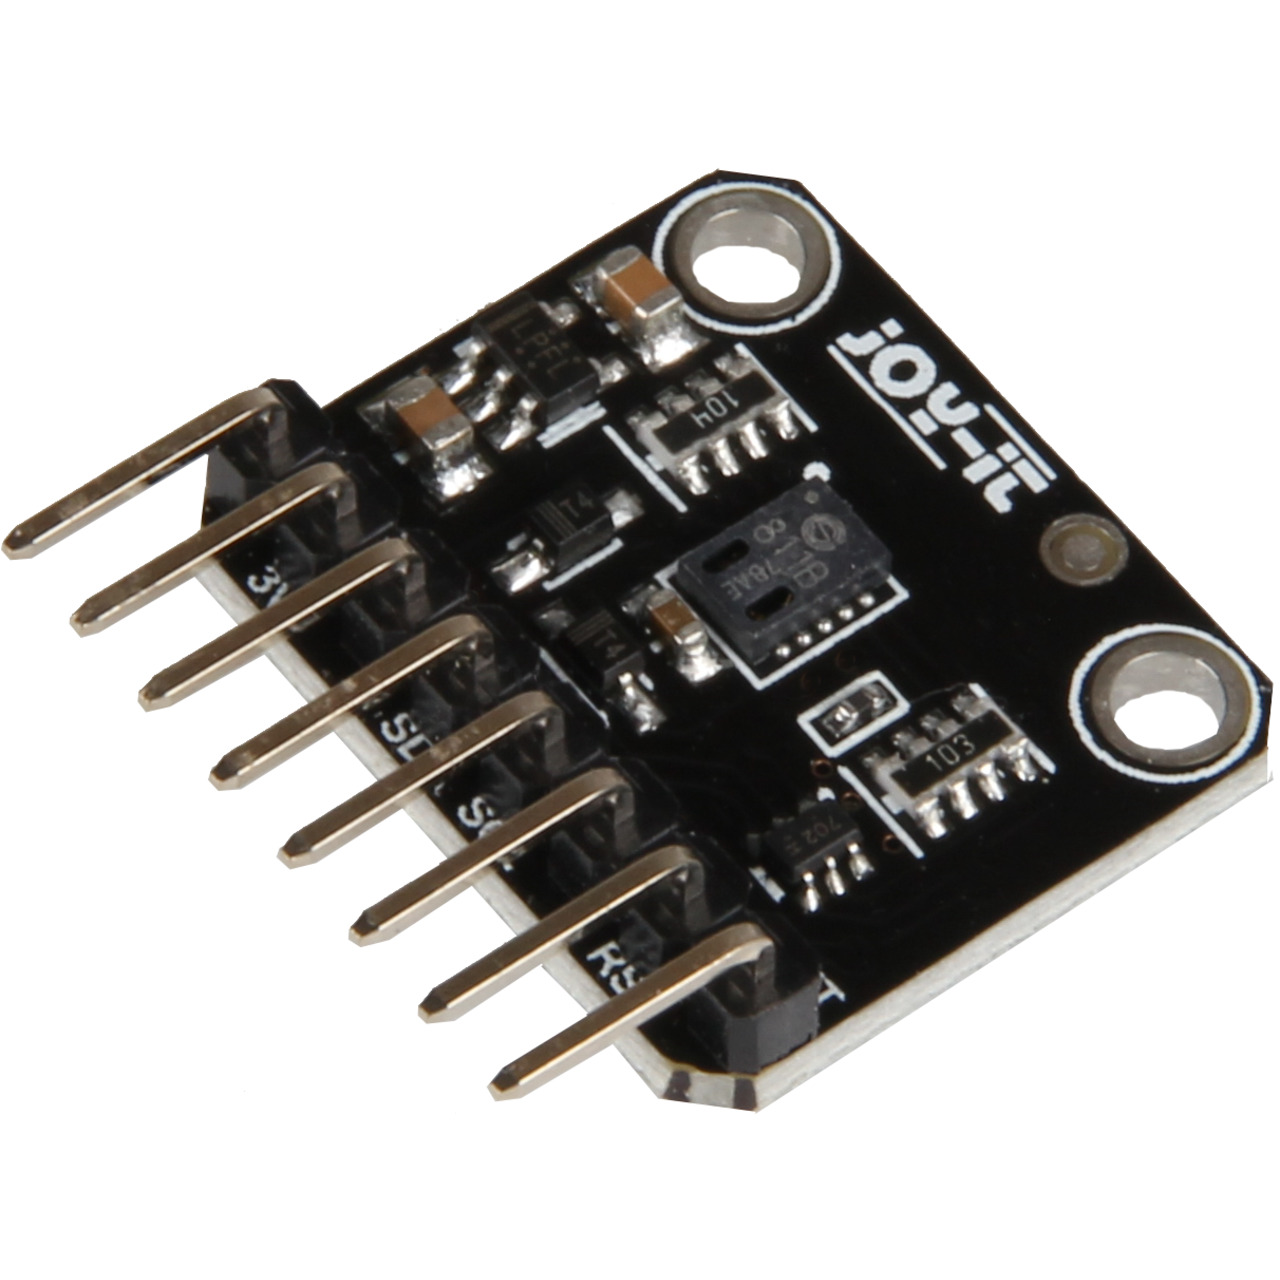 Joy-IT Luftqualitätssensor (VOC) mit angelötetenn Pins- I2C- CCS811 Sensor